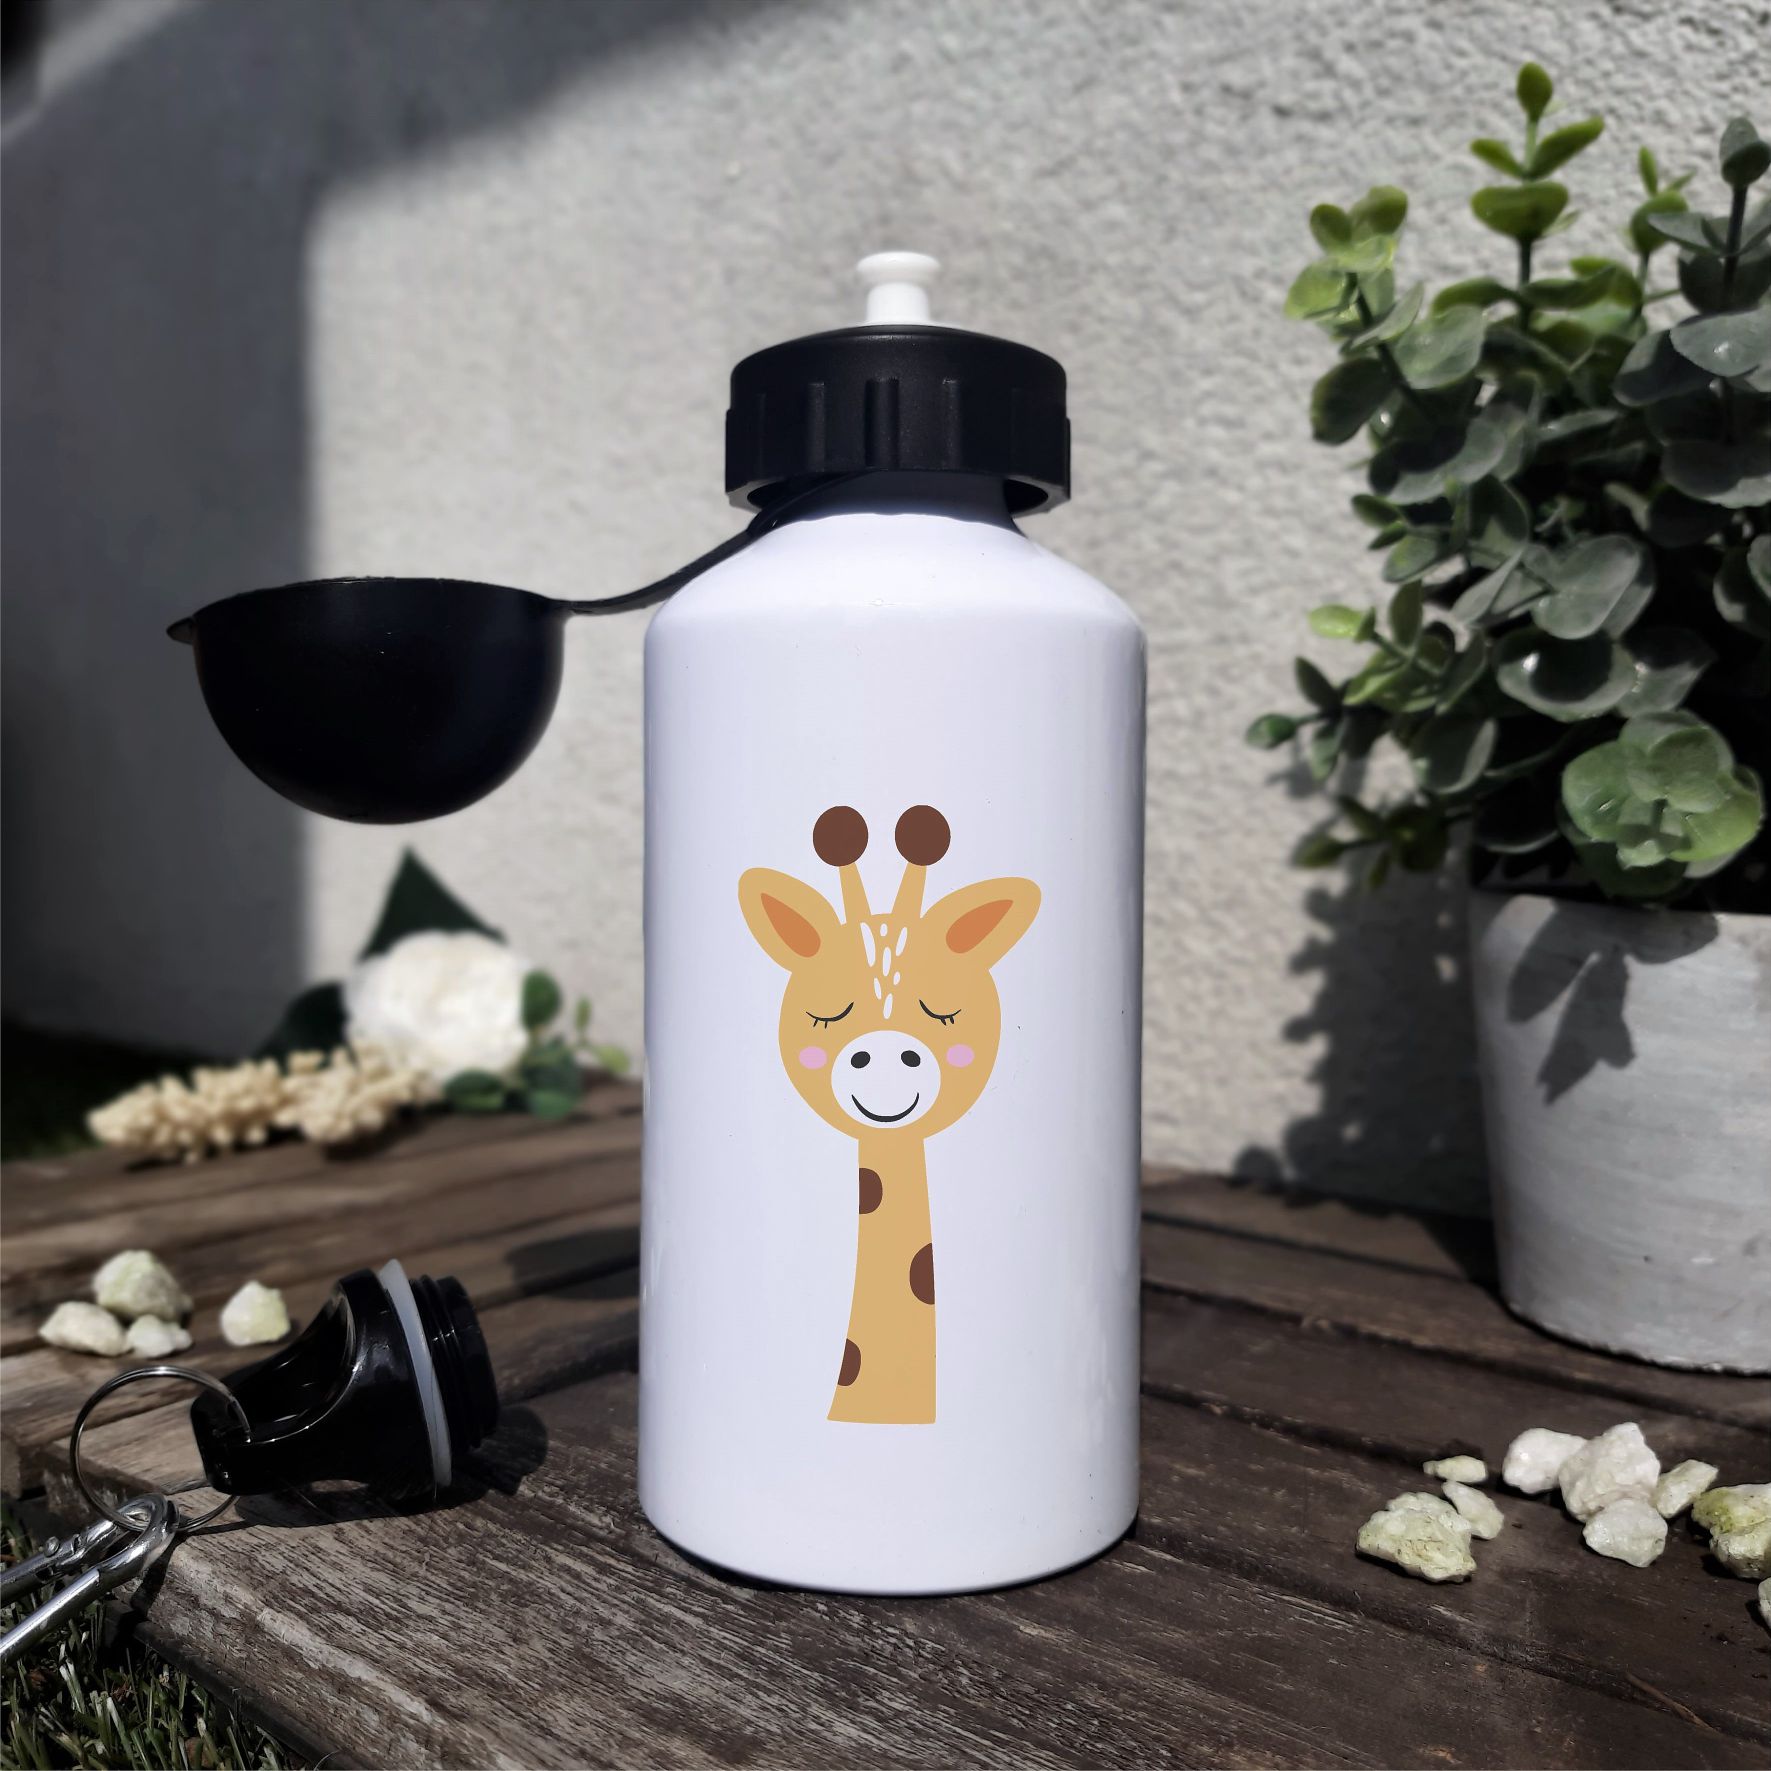 Trinkflasche "Giraffe - Da es förderlich für die Gesundheit ist, habe beschlossen glücklich zu sein"